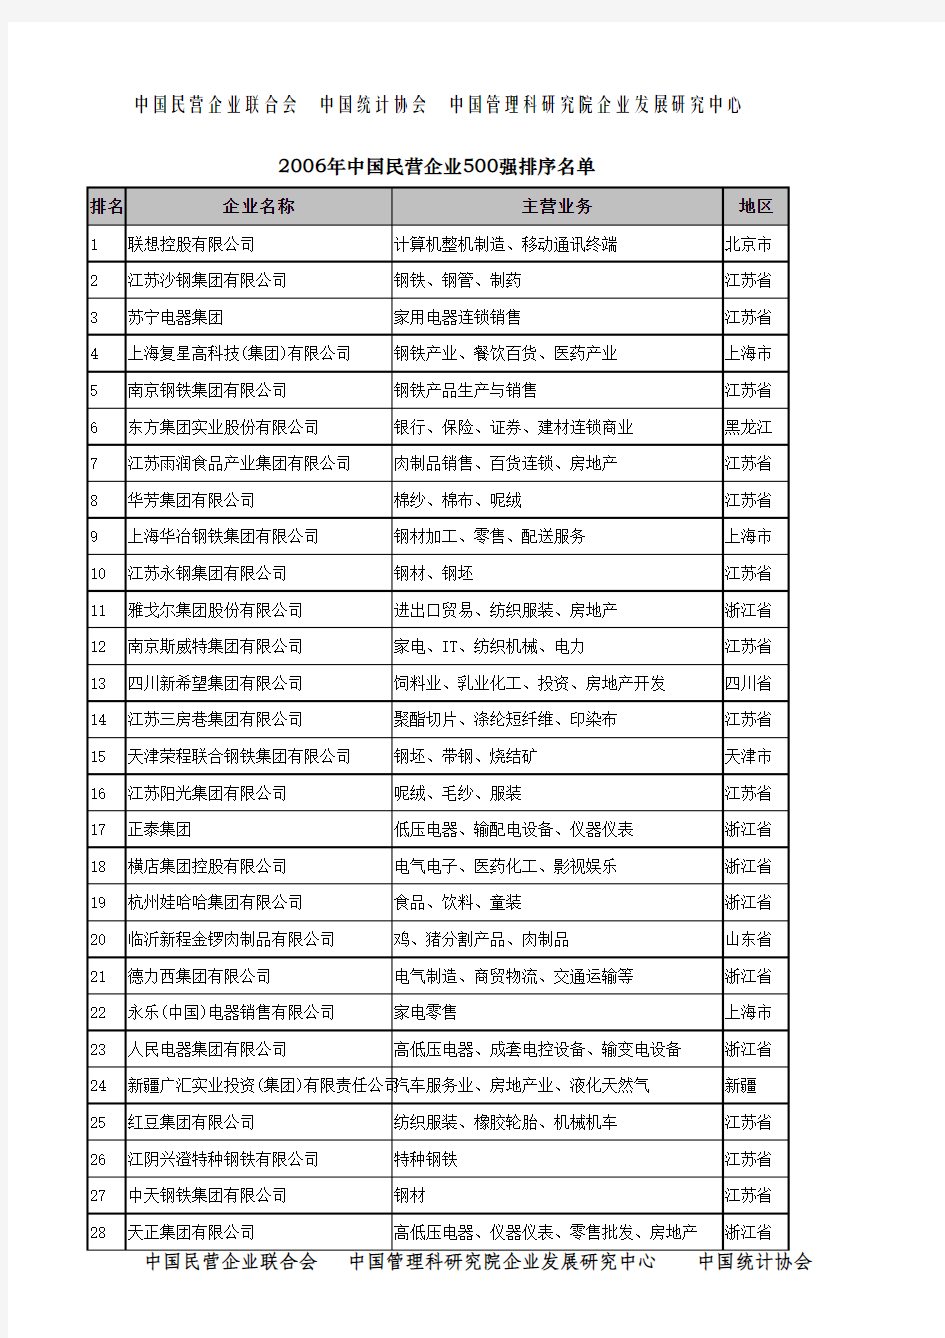 2006年中国民营企业500强排序名单